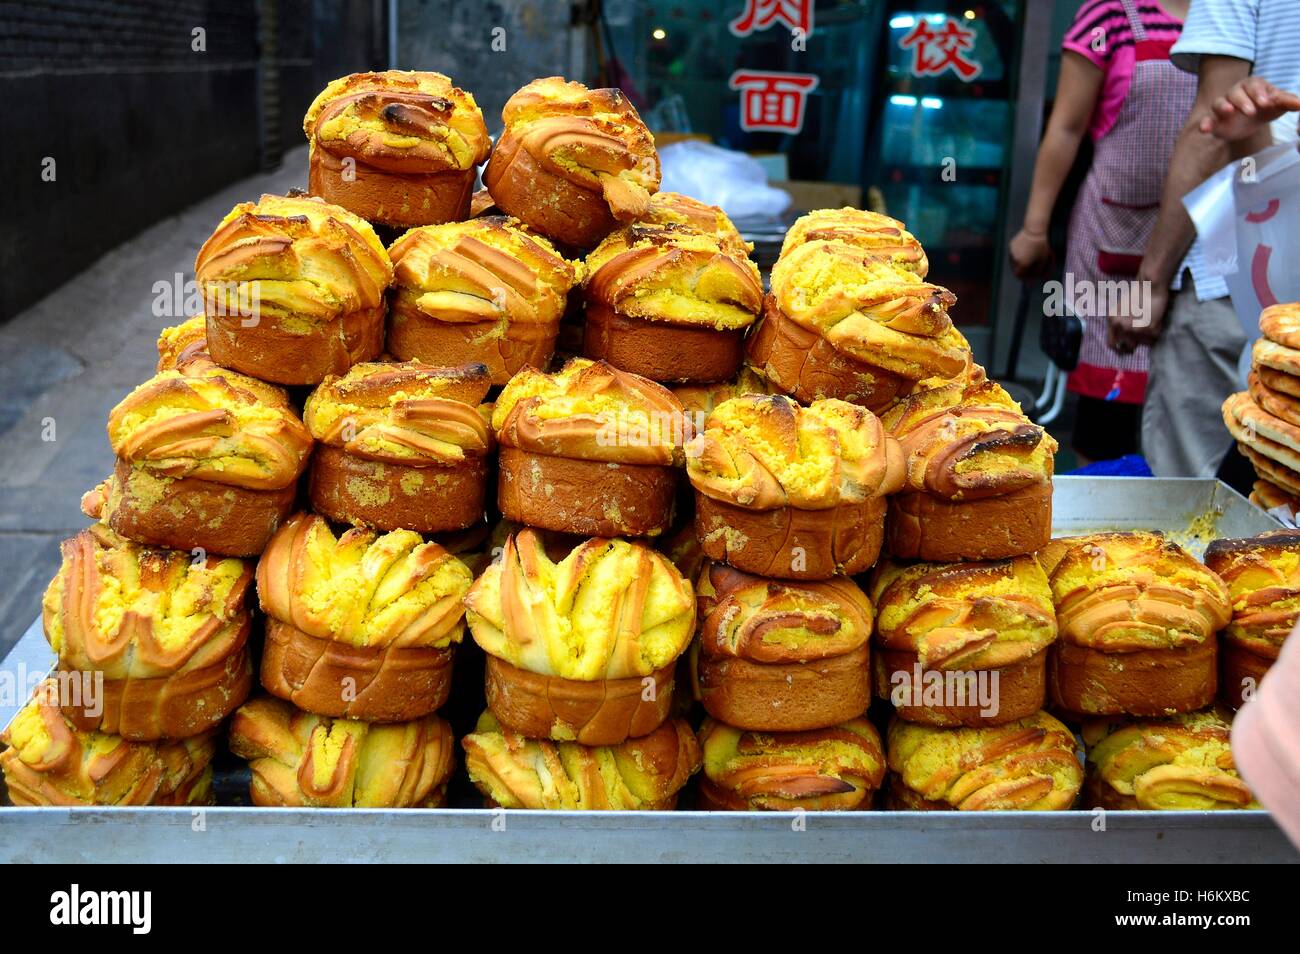 Le pain géant en forme de muffin de couleur dorée de la China Xi'an Muslim Food Street, un endroit populaire pour les touristes. Banque D'Images